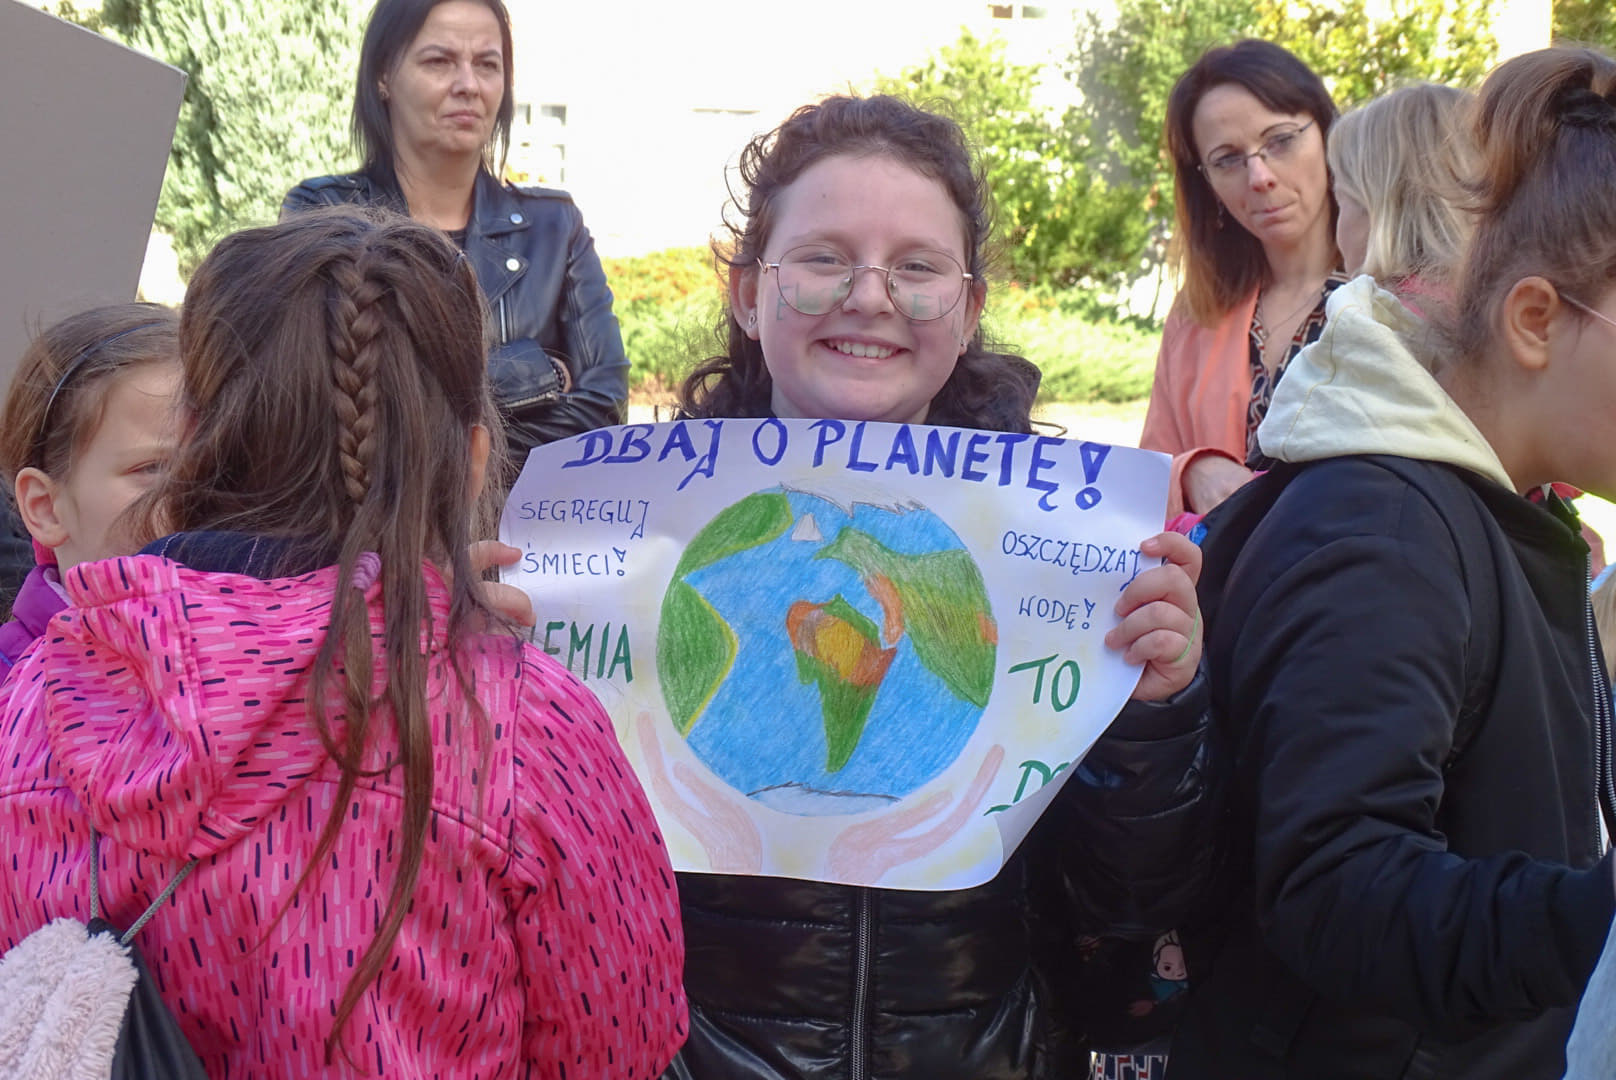 grupka młodzieży, dziewczynka w centrum trzyma plakat, na którym namalowana jest kula ziemska, na plakacie napis: dbaj o kulę ziemską